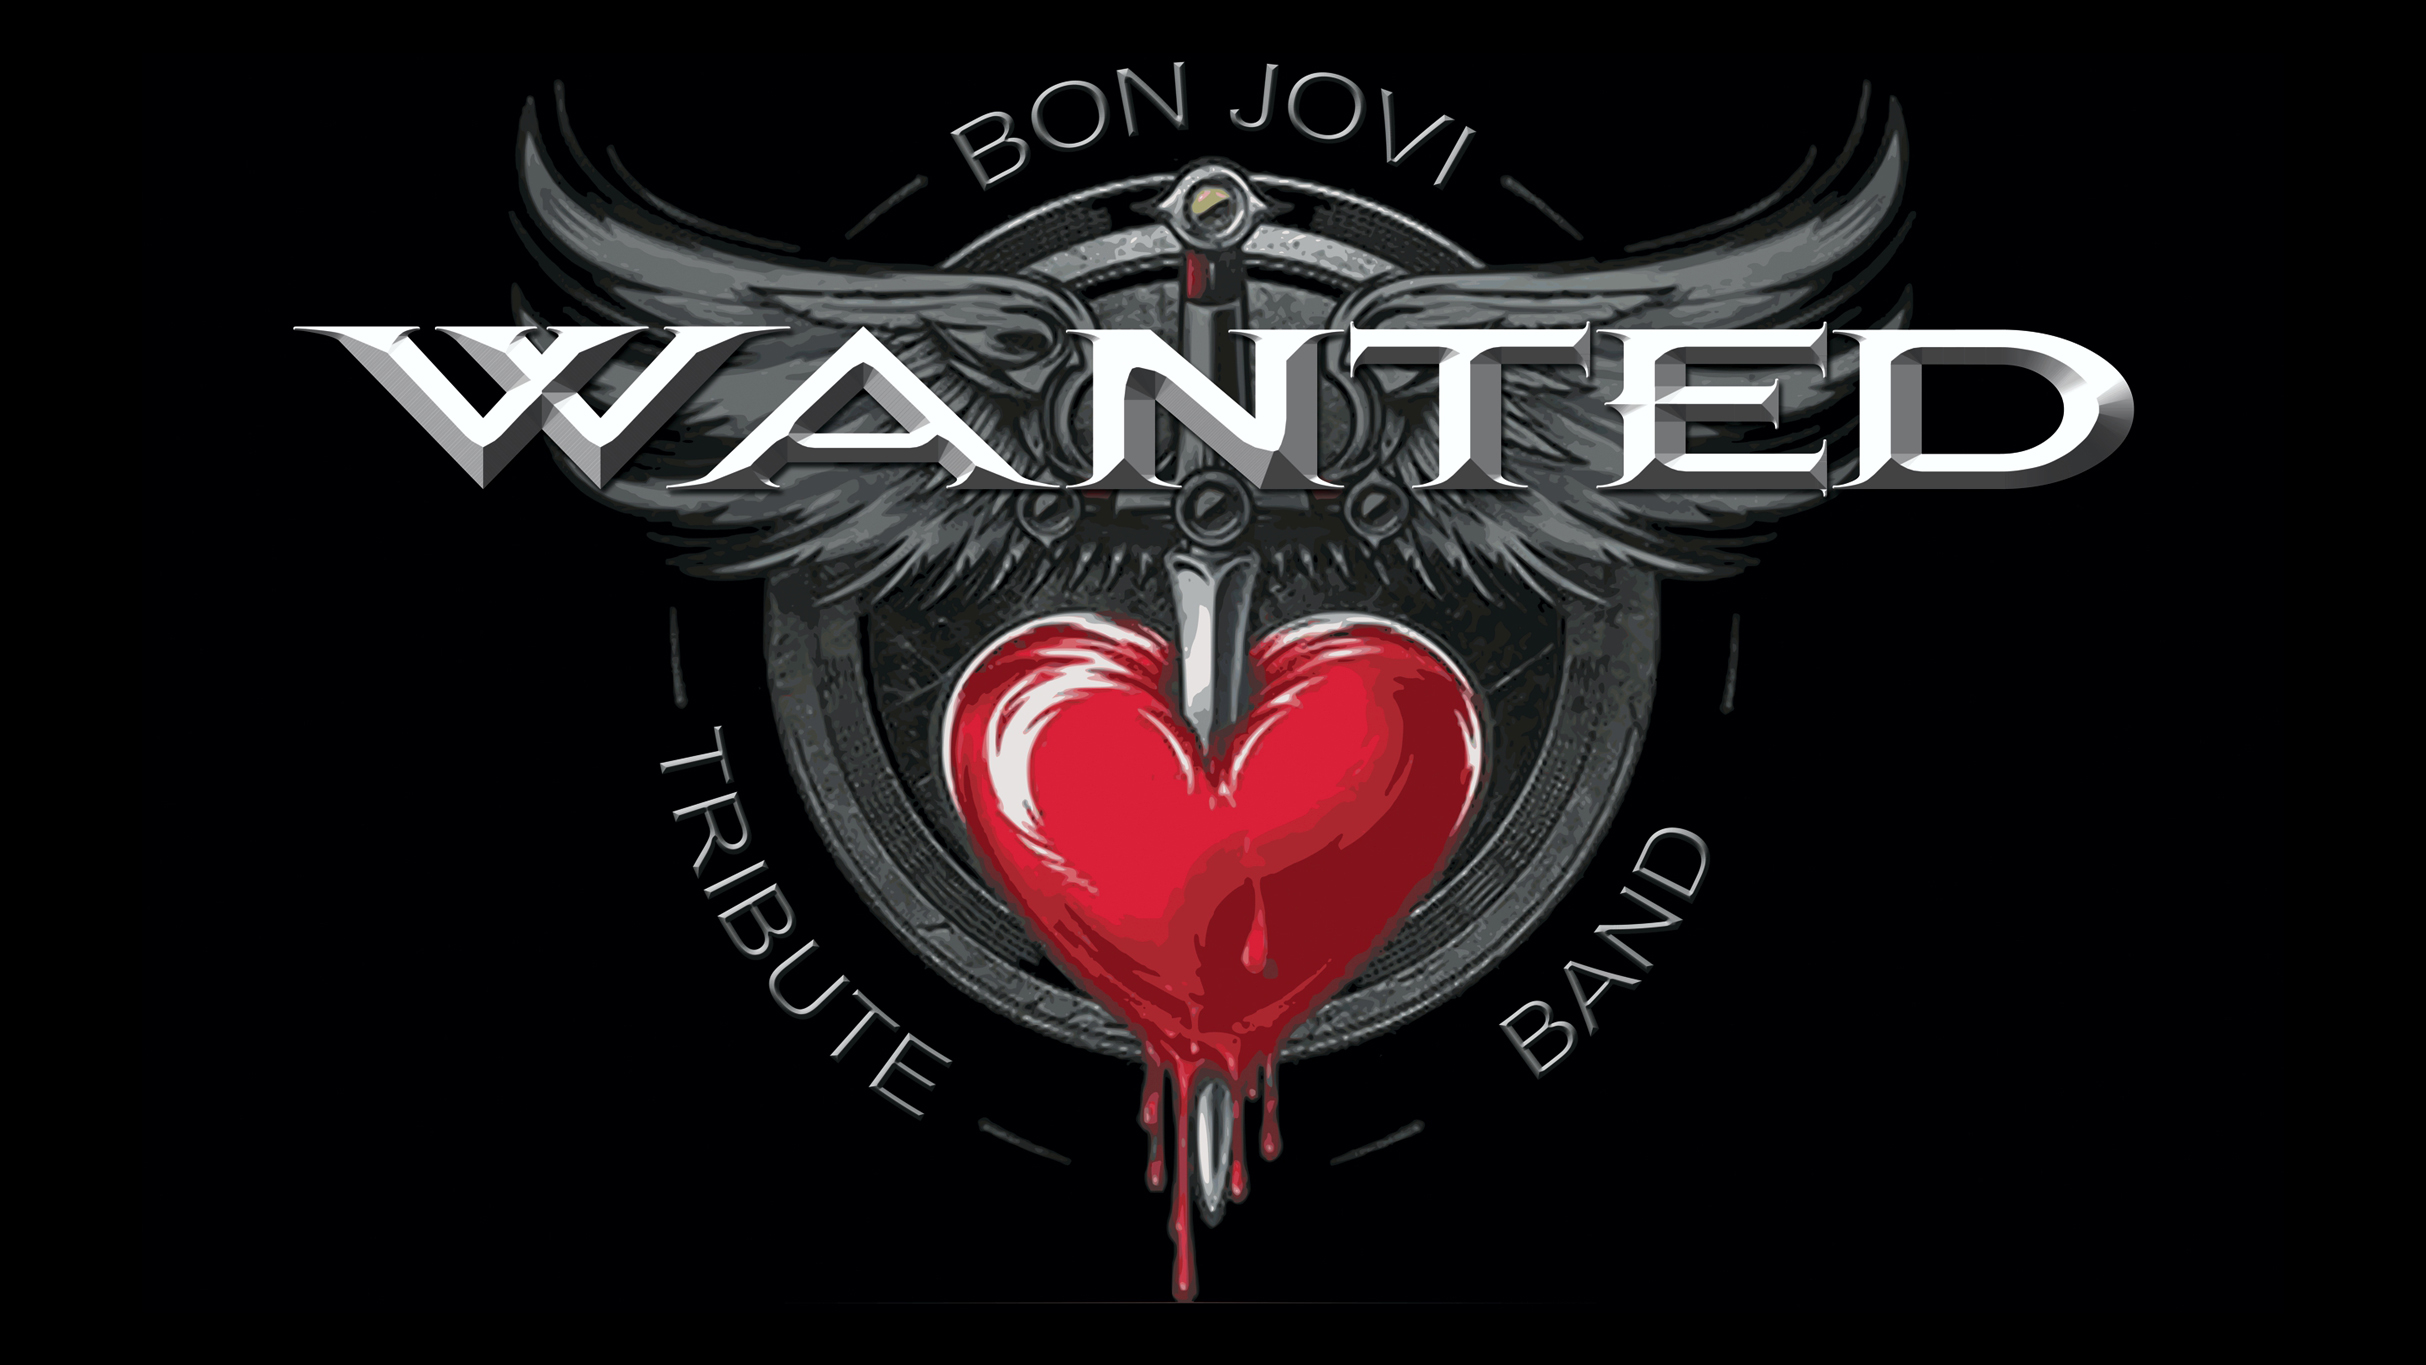 Wanted - The Bon Jovi Tribute